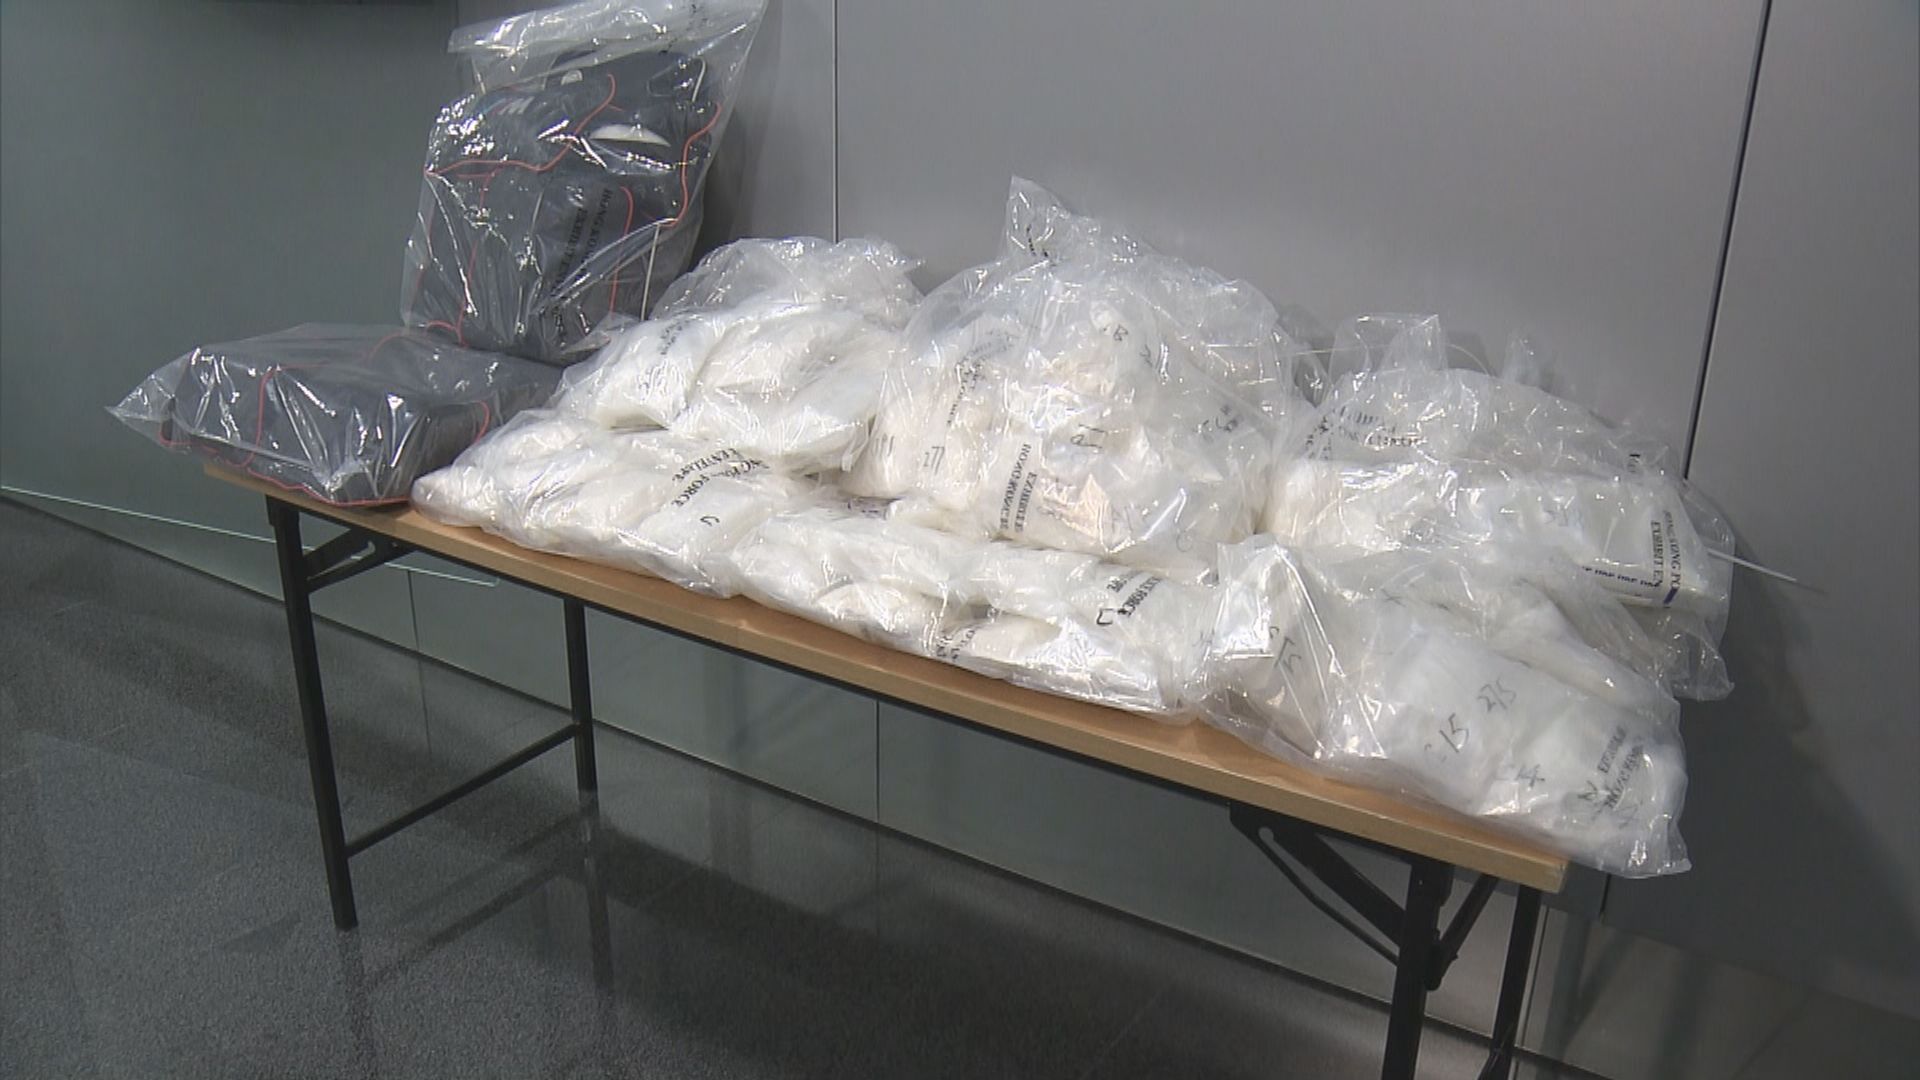 警方檢獲28公斤懷疑可卡因 市值3500萬元